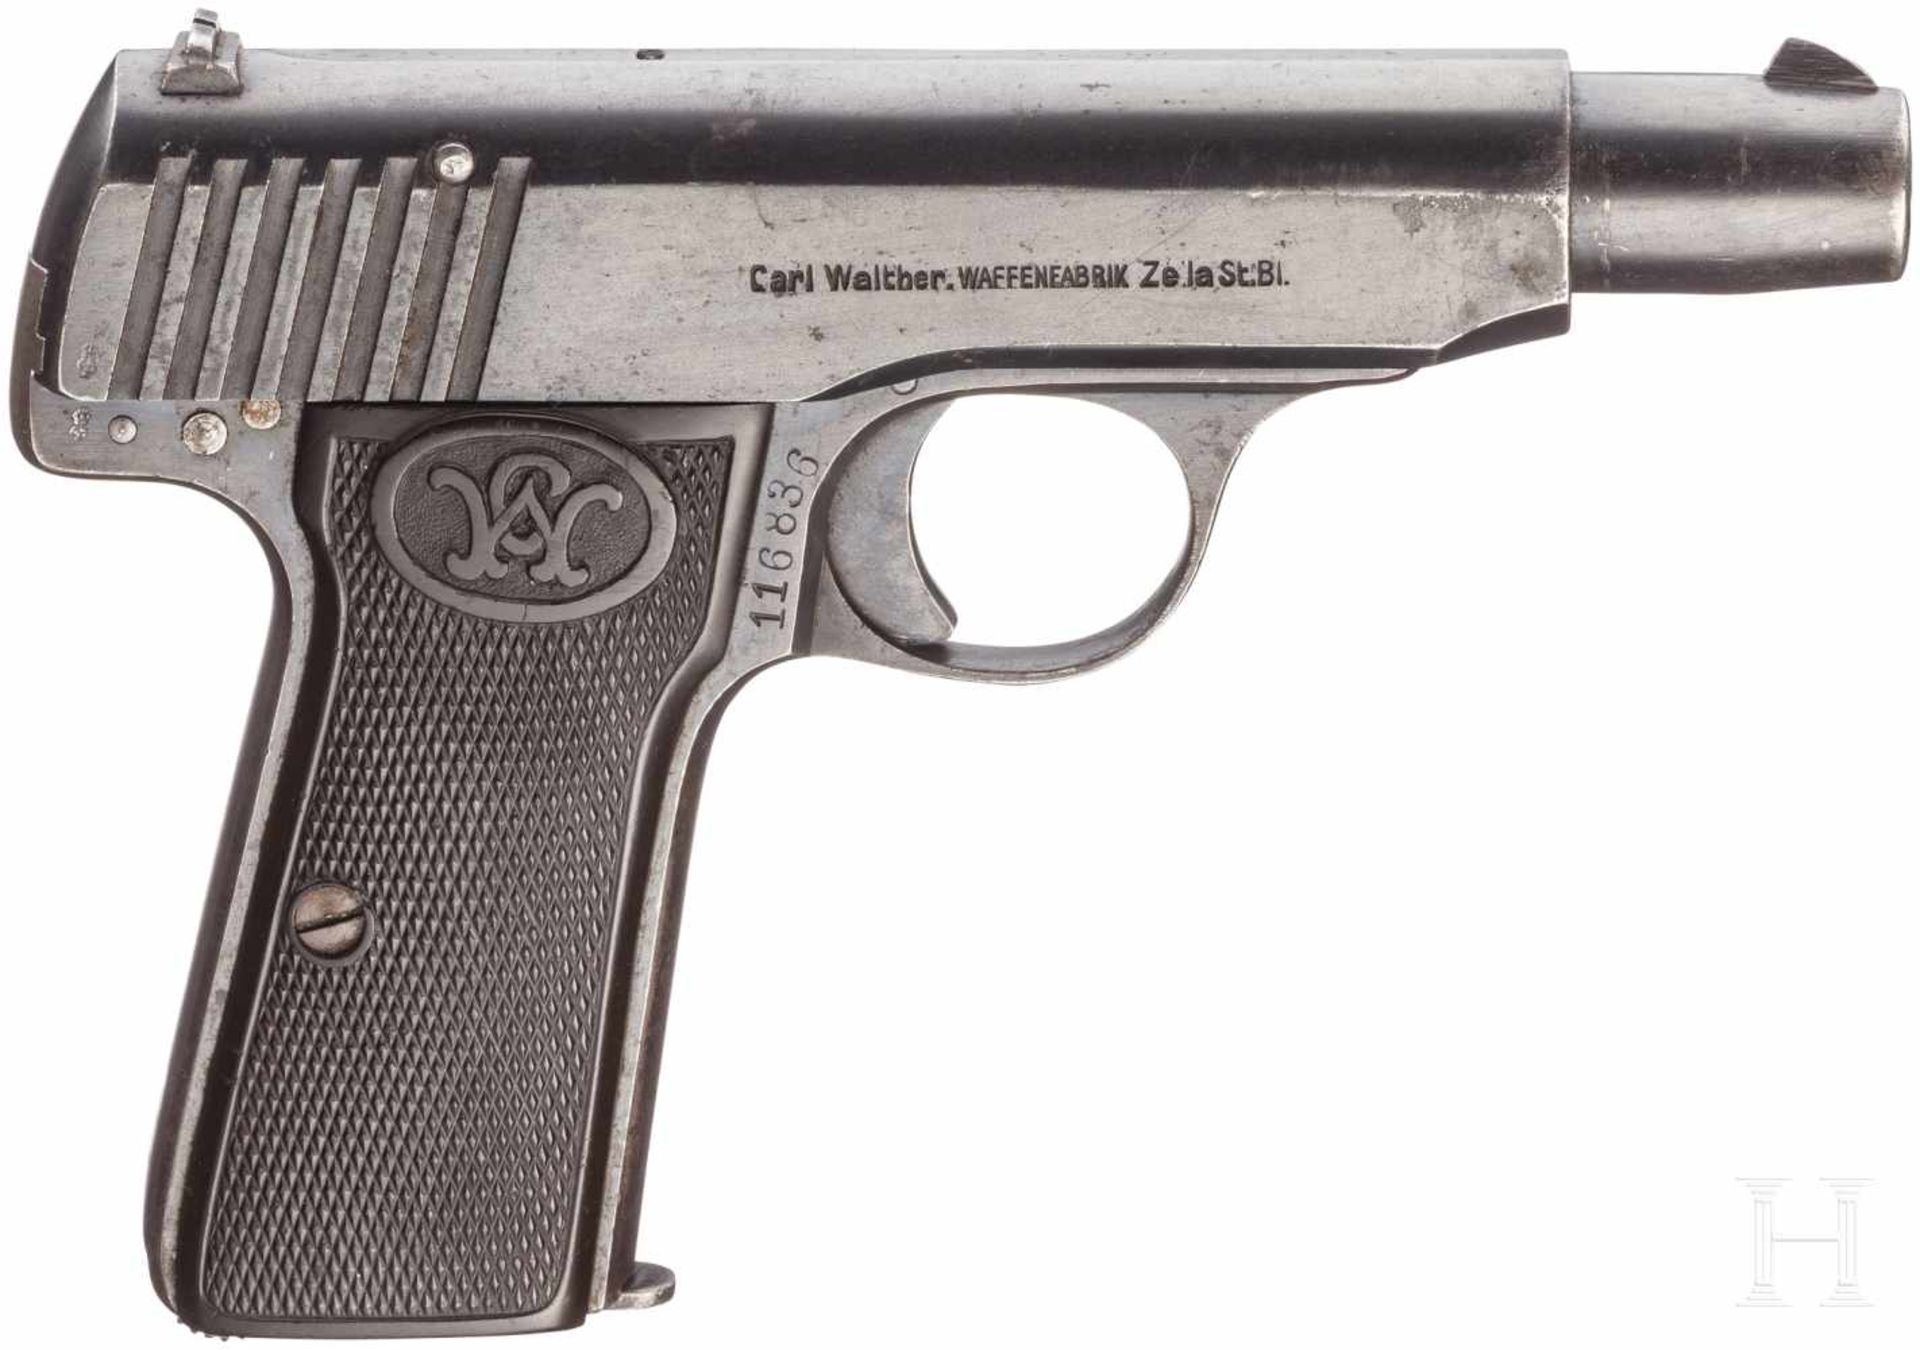 Walther Mod. 4, MilitärkontraktKal. 7,65 Brow., Nr. 116836, Nummerngleich. Matter Lauf. - Bild 2 aus 2